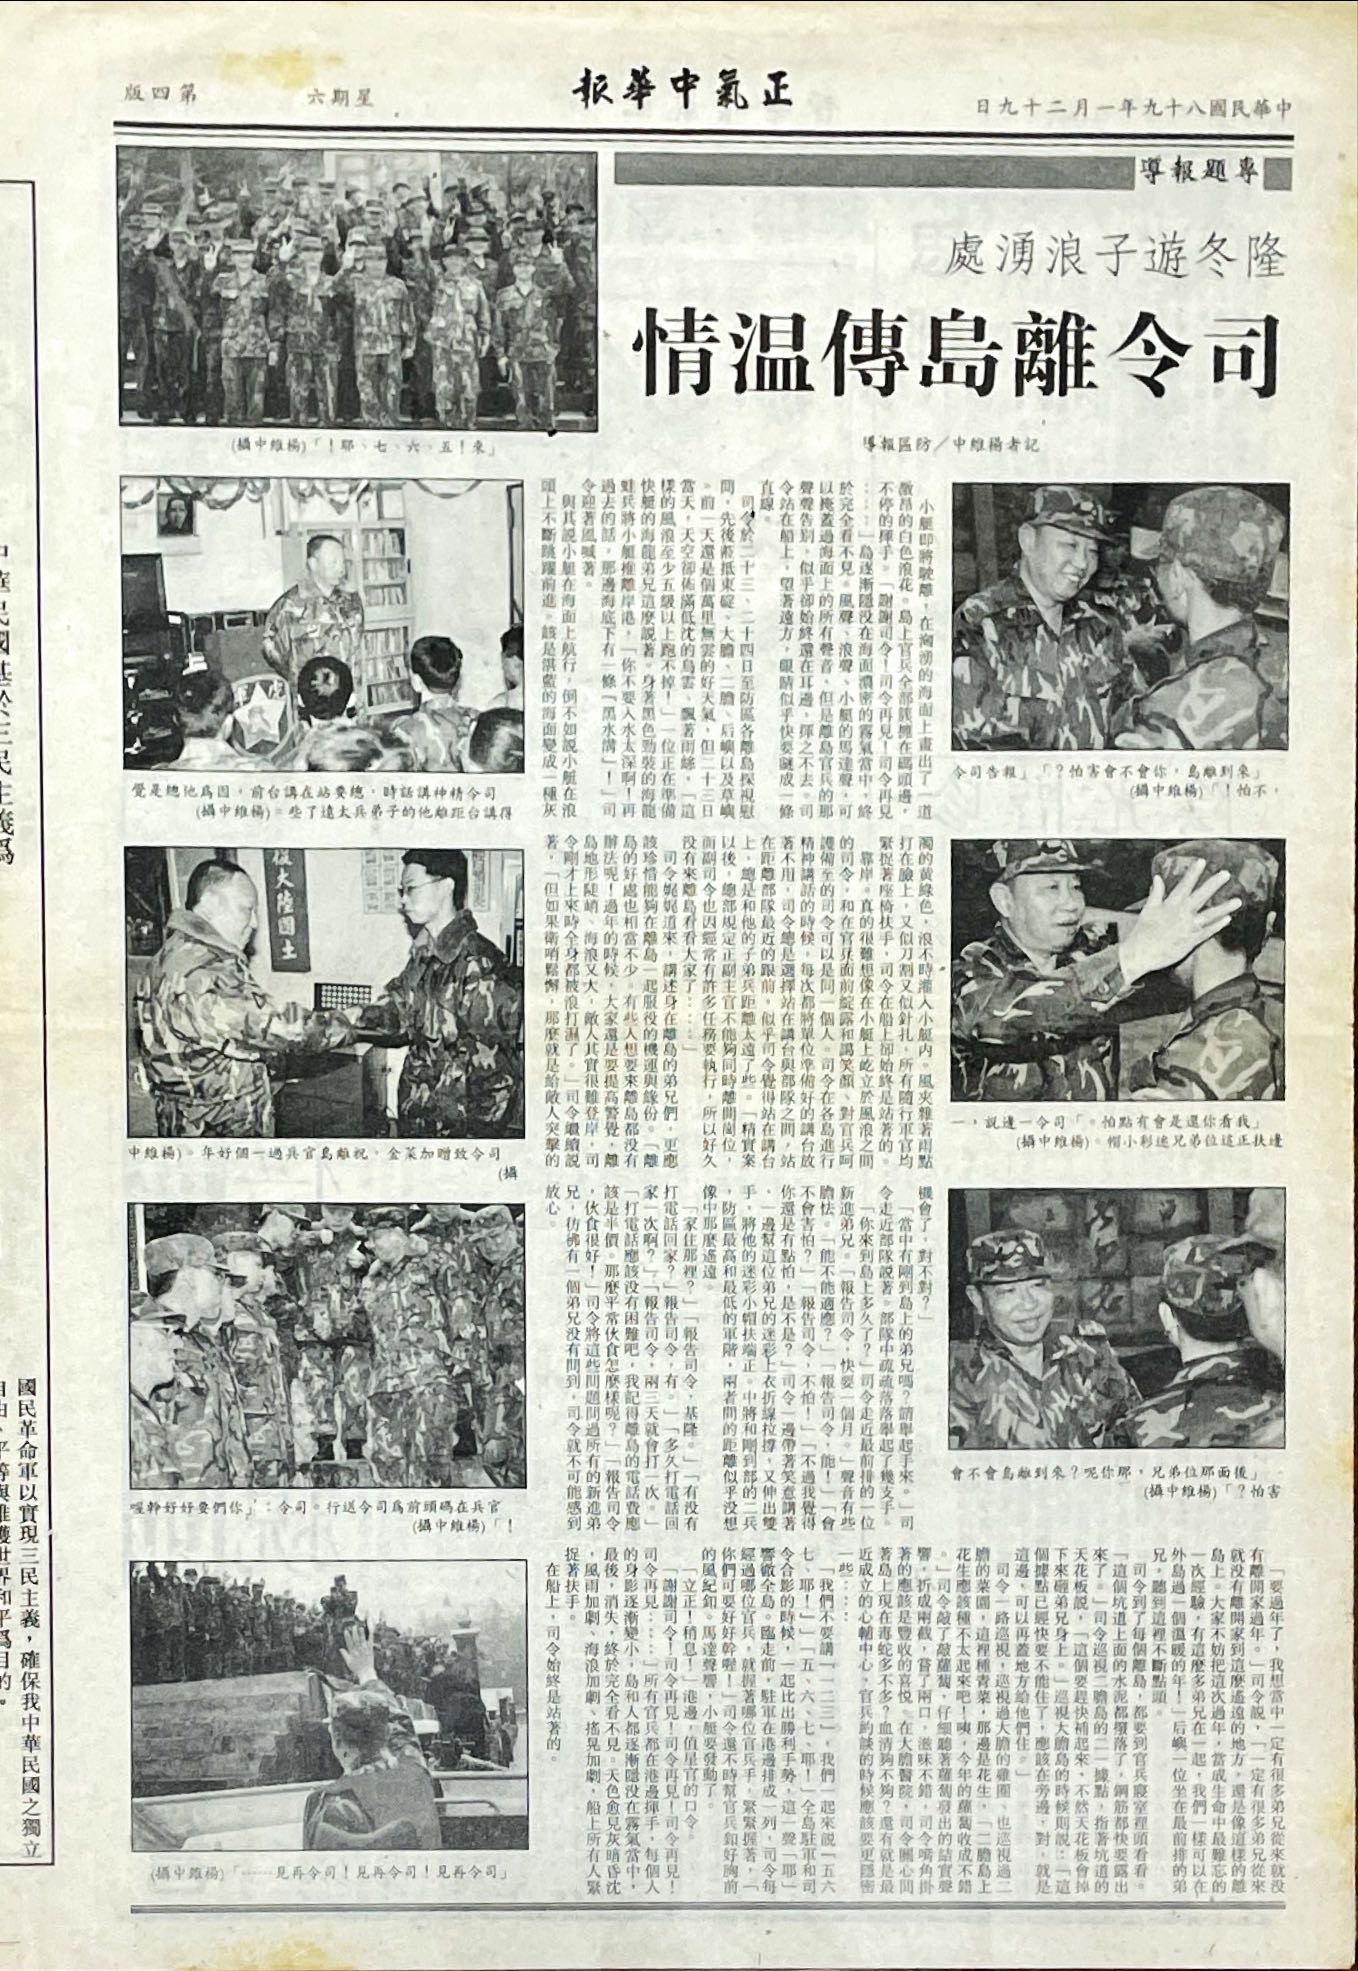 民國八十九年一月二十九日正氣中華報司令離島送溫情